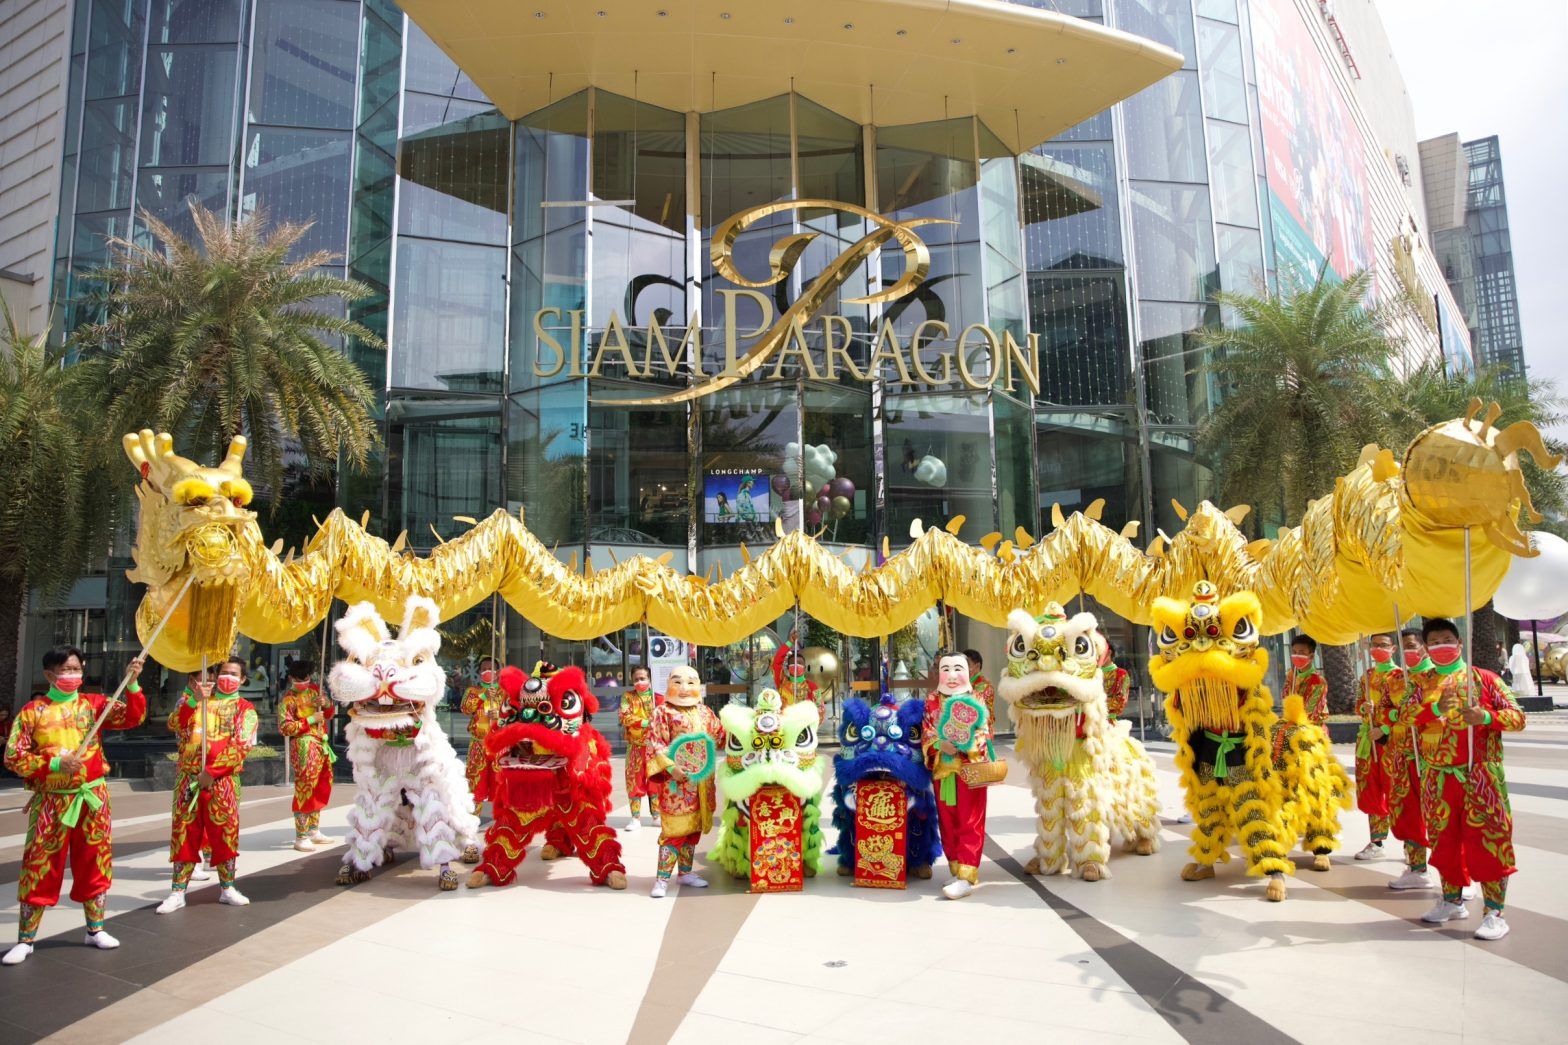 Đoàn múa lân trước sảnh trung tâm mua sắm Siam Paragon nổi tiếng tại Bangkok (Thái Lan).